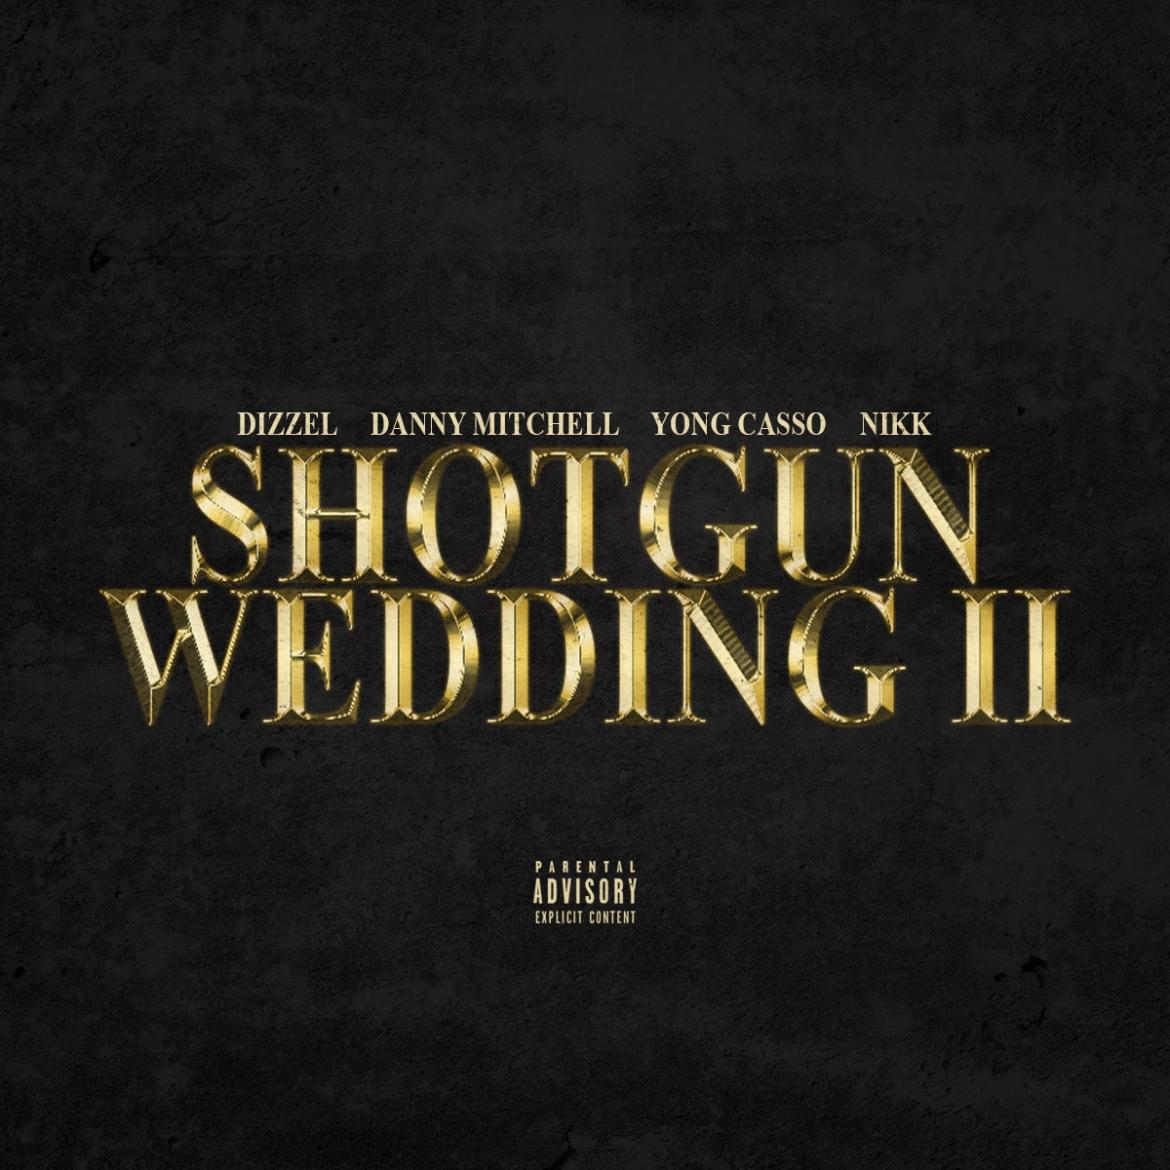 Shotgun Wedding II